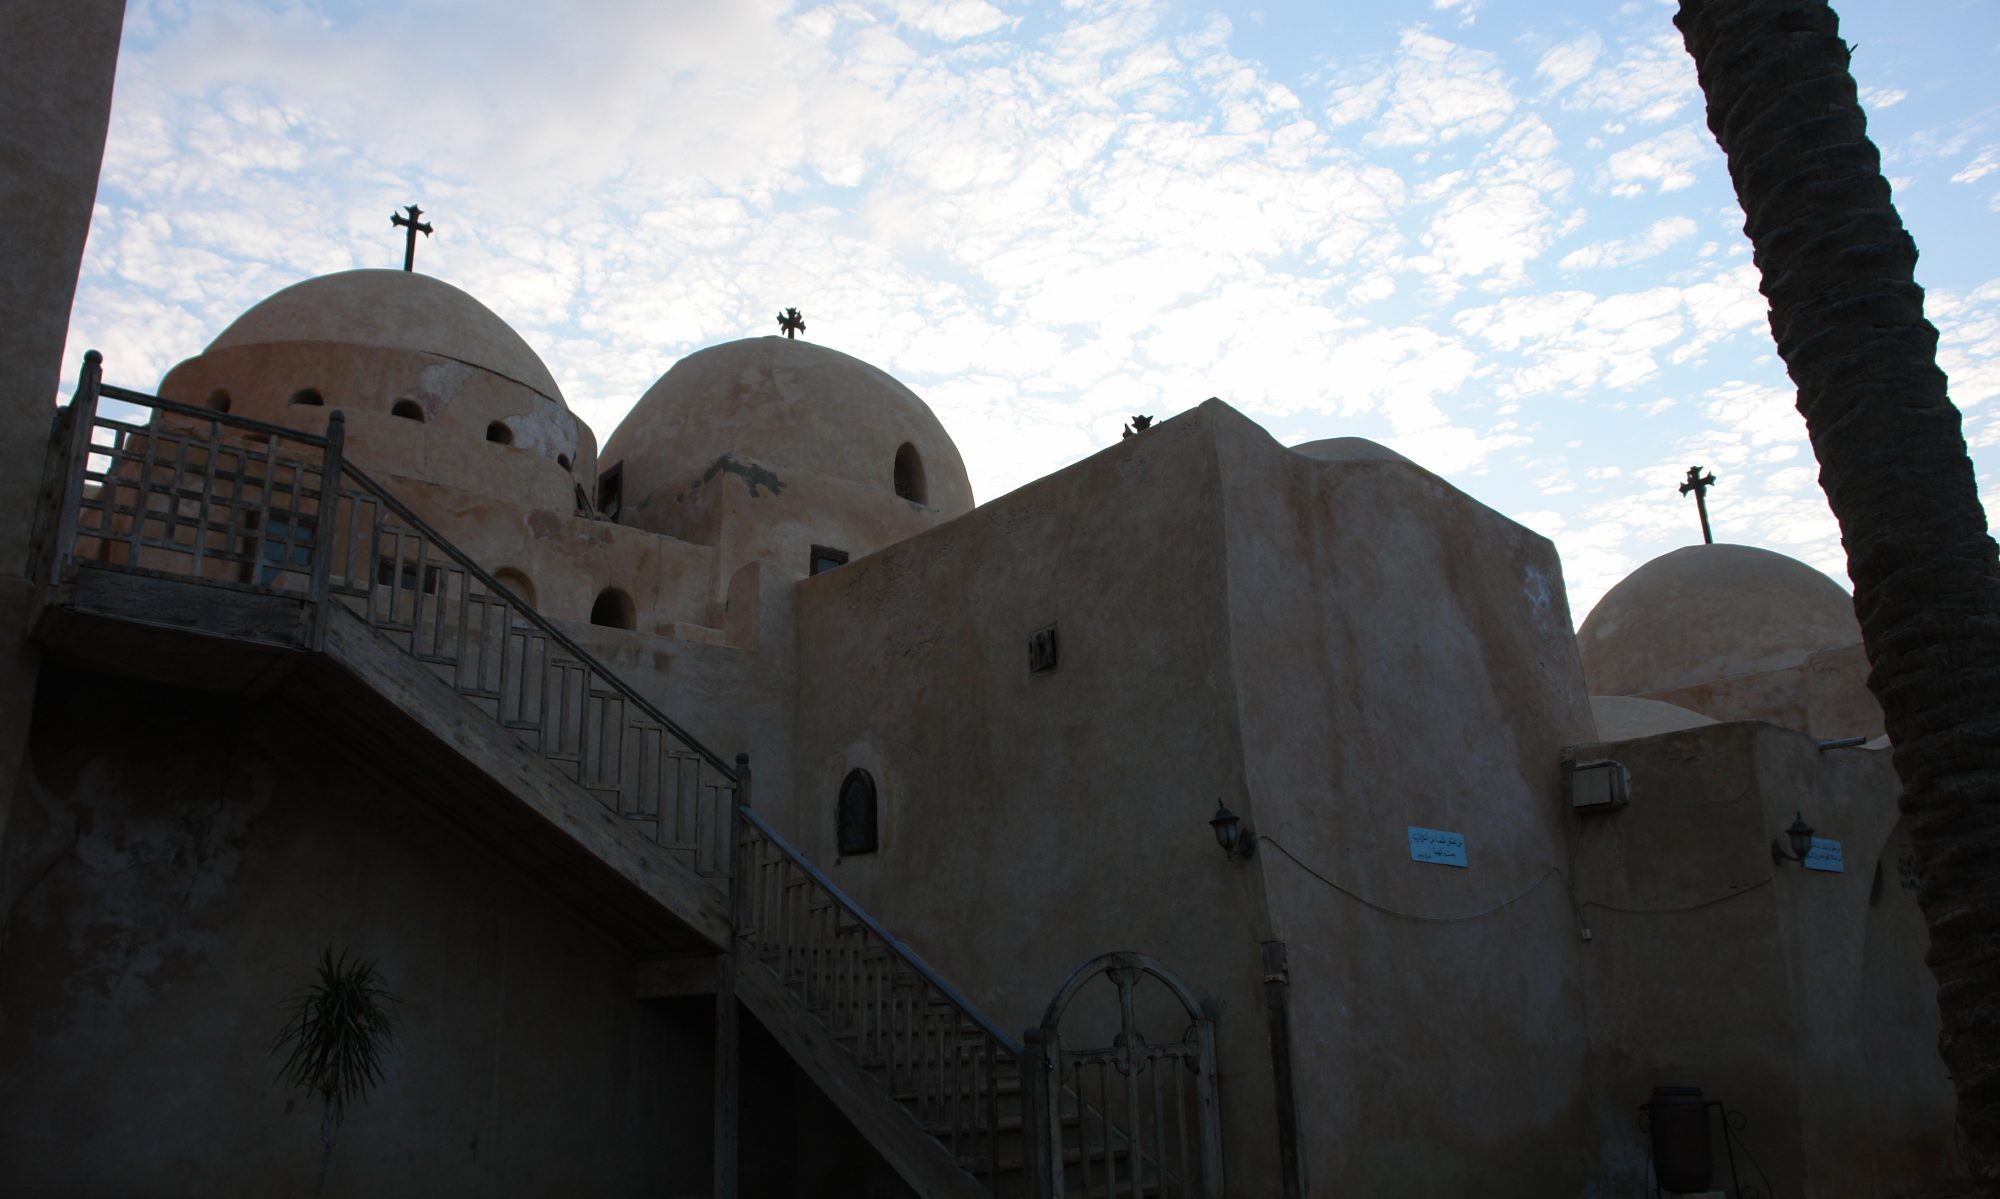 The Church of Deir al-Surian